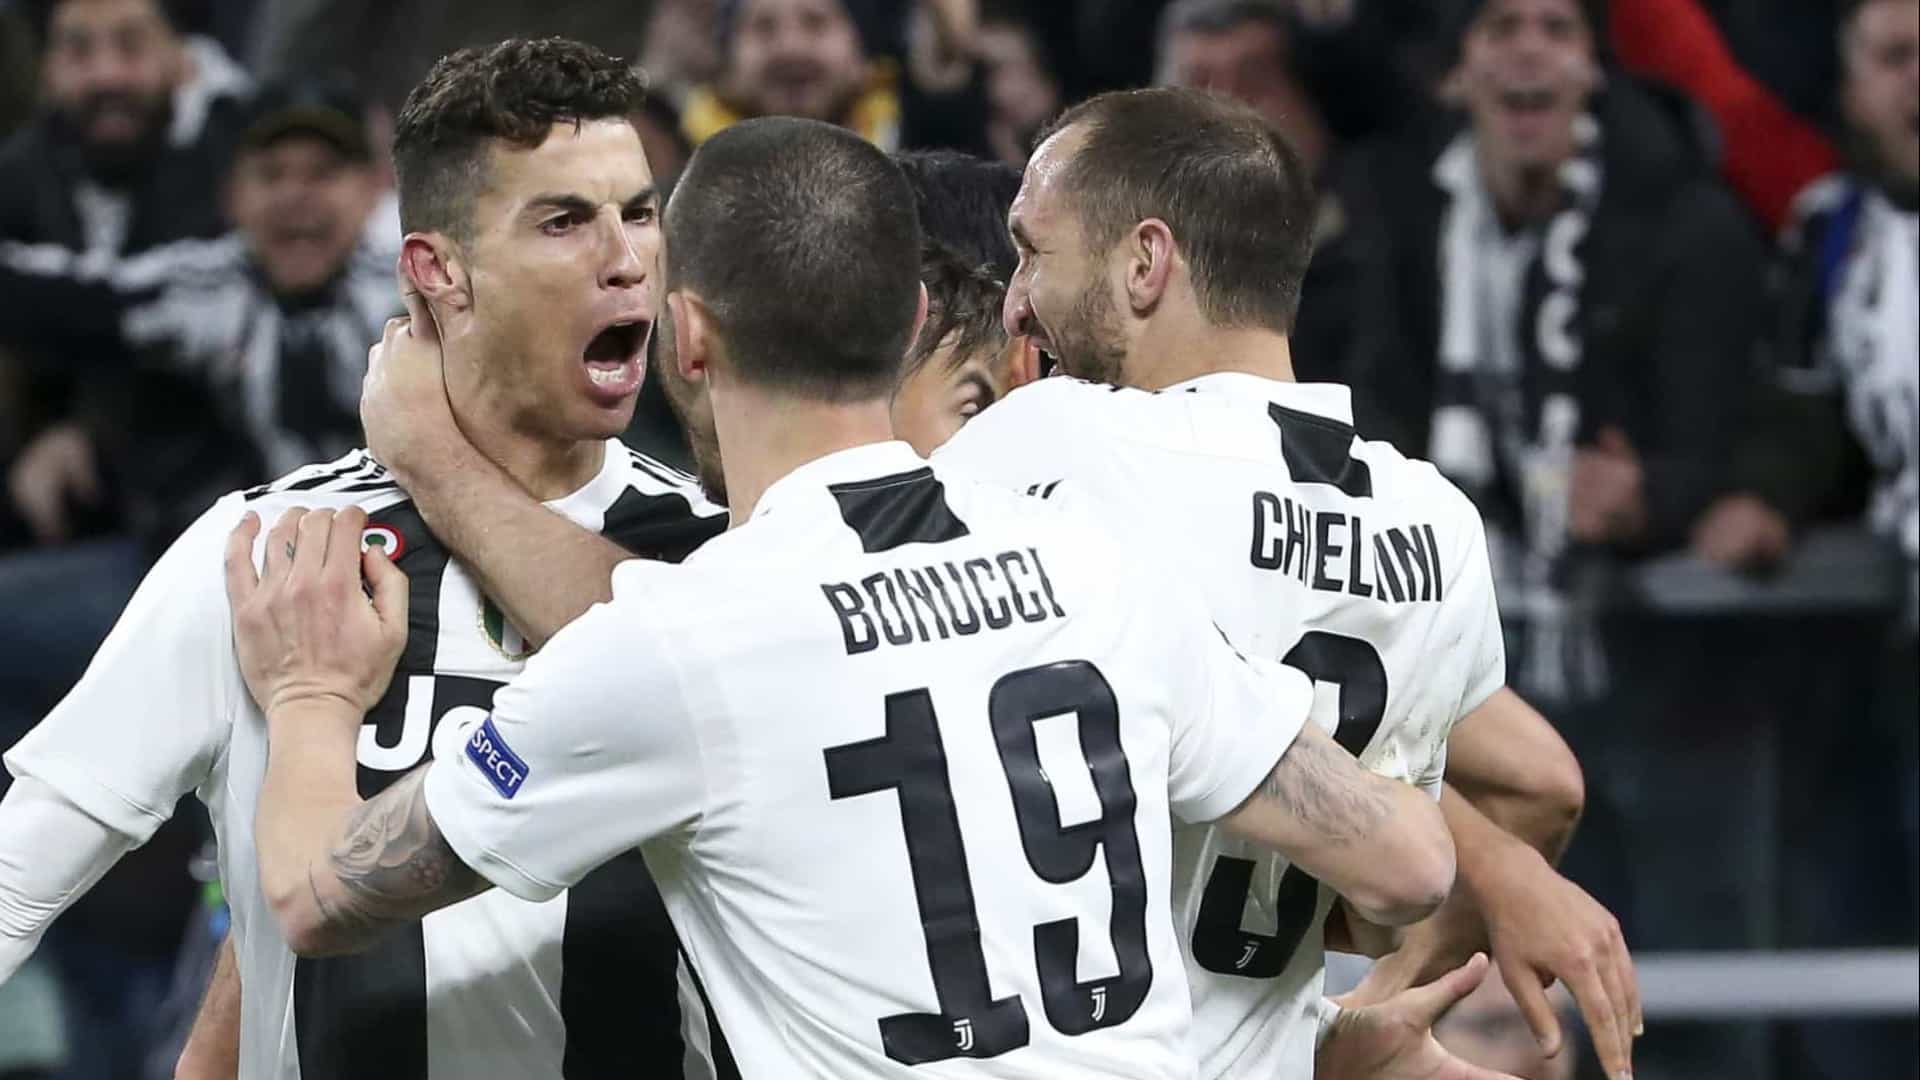 «On le savait à son arrivée», Chiellini et Bonucci parlent du comportement de Ronaldo